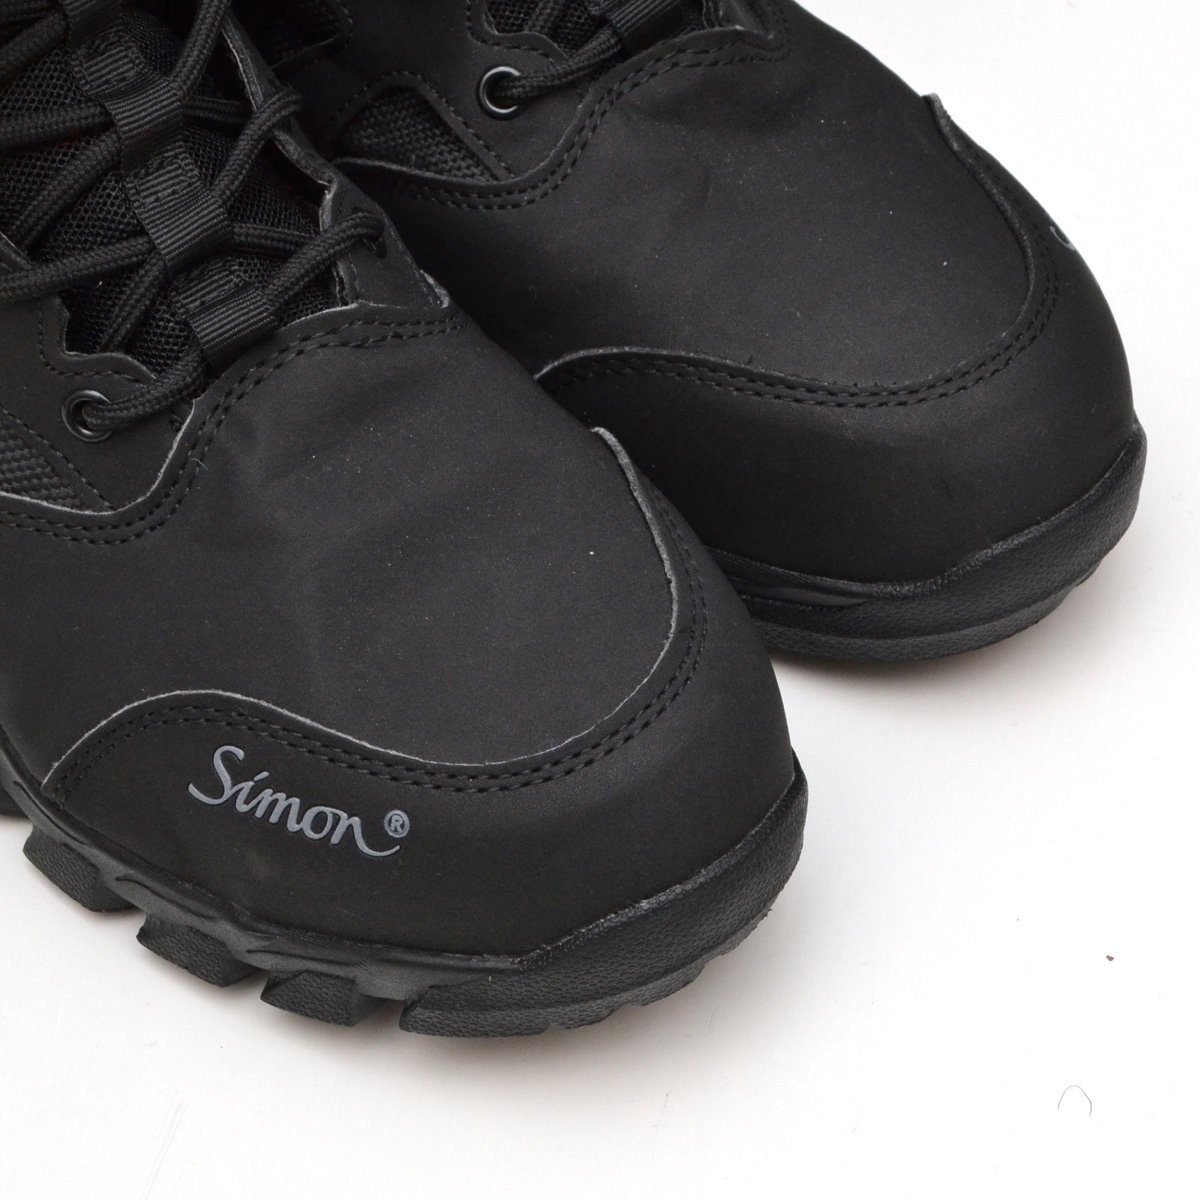 SIMON シモン ブレイブセーフティハイカットシューズ 安全靴 JSAA A種 ブーツ 26.5cm メンズ W022 ブラック M748108_画像4